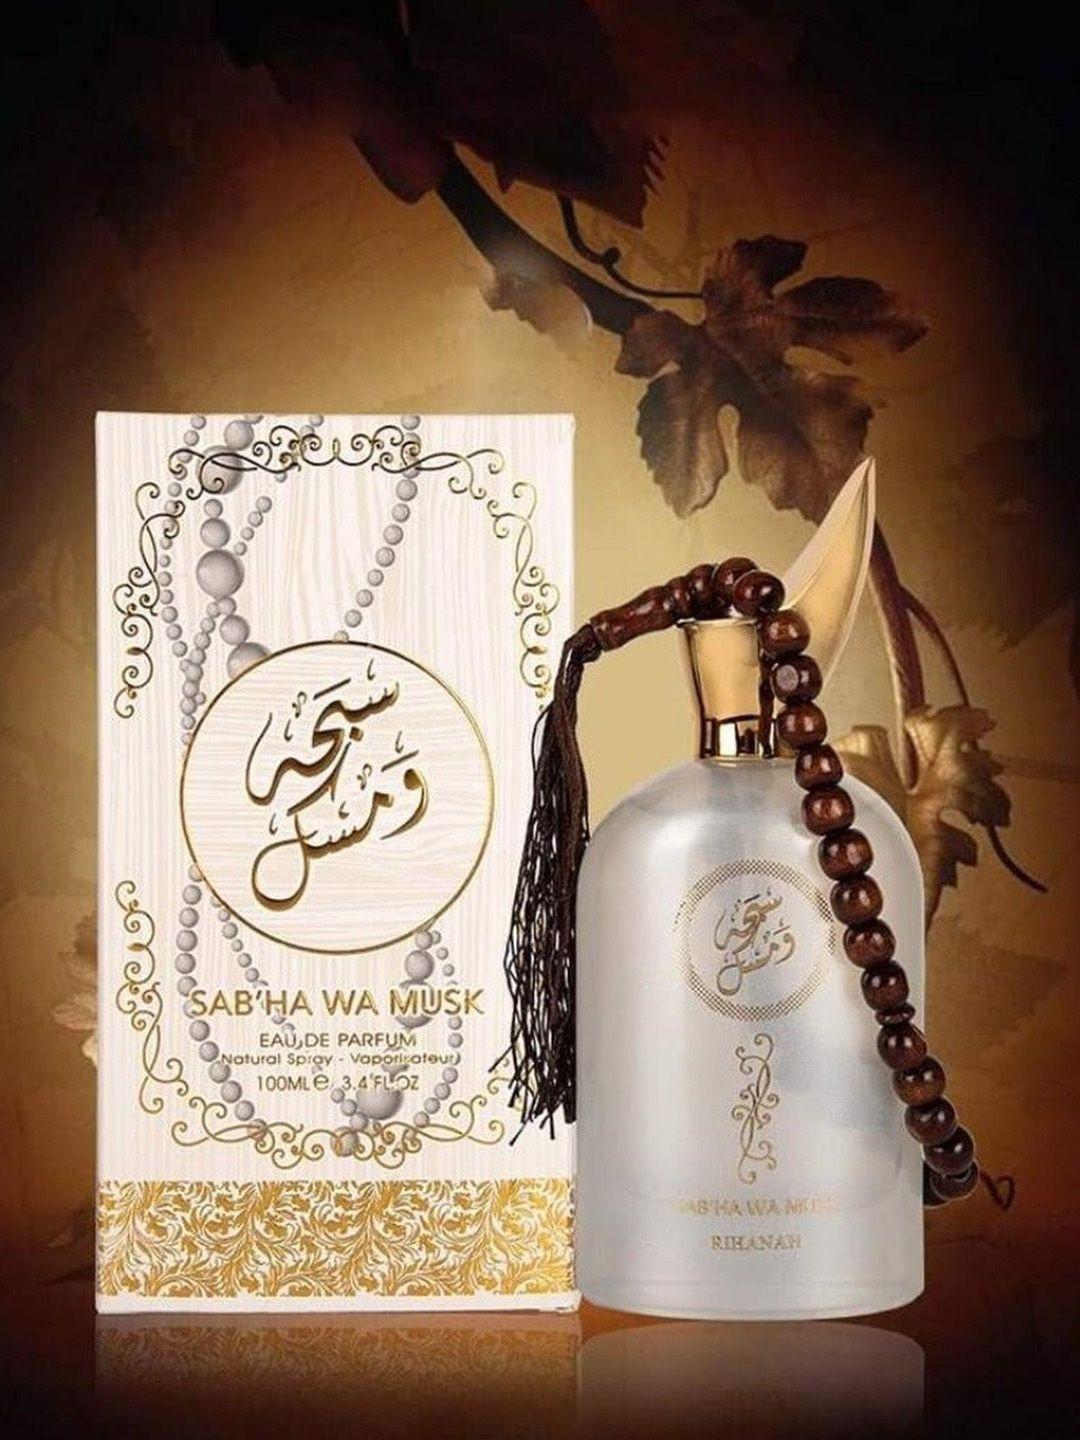 rihanah sabha wa musk eau de parfum - 100 ml